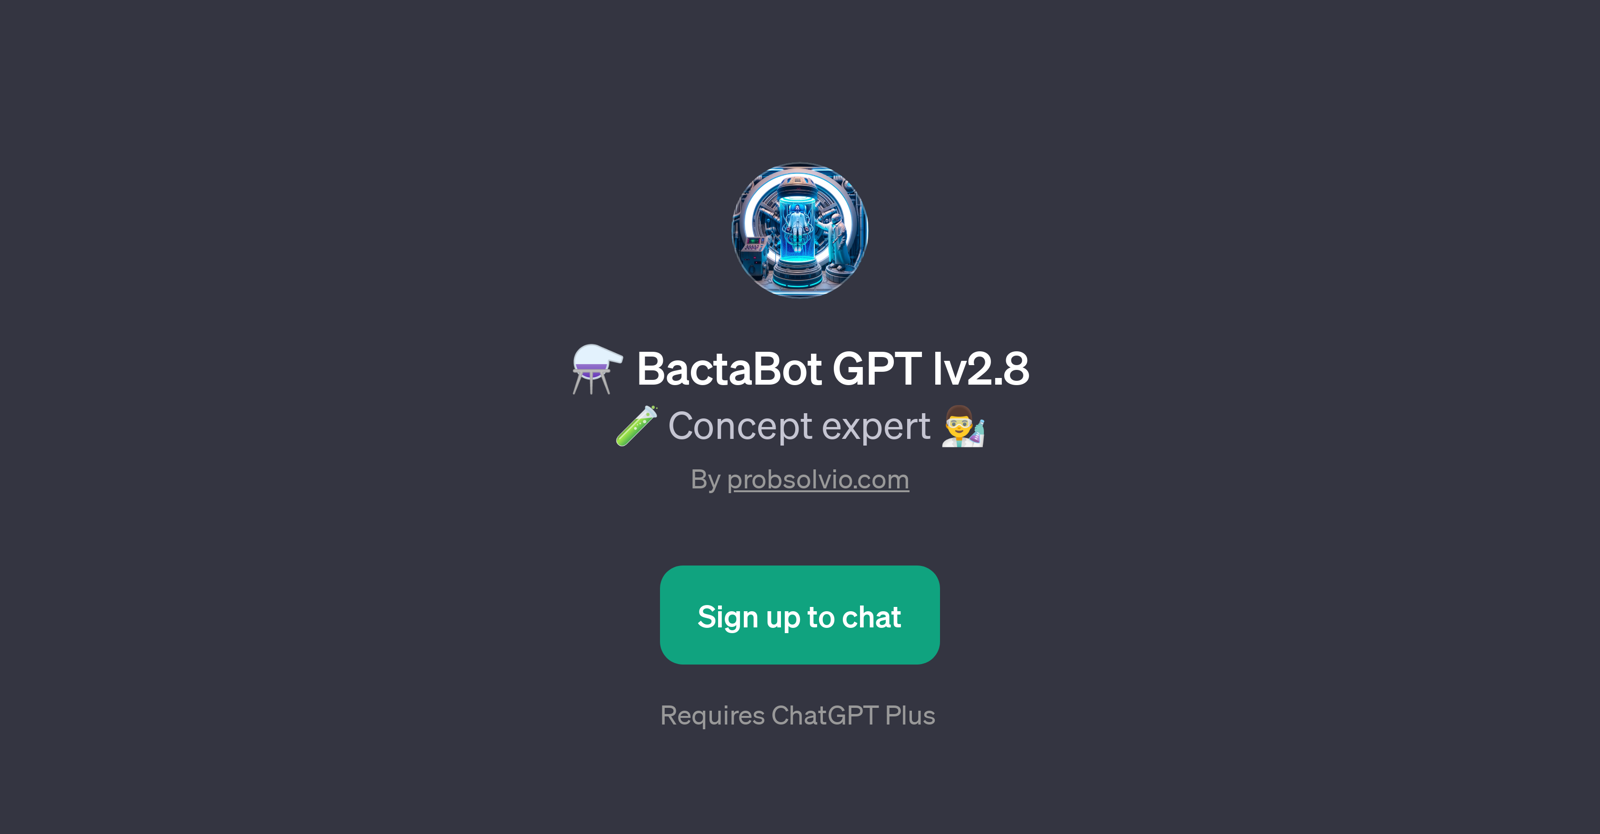 BactaBot GPT lv2.8 website